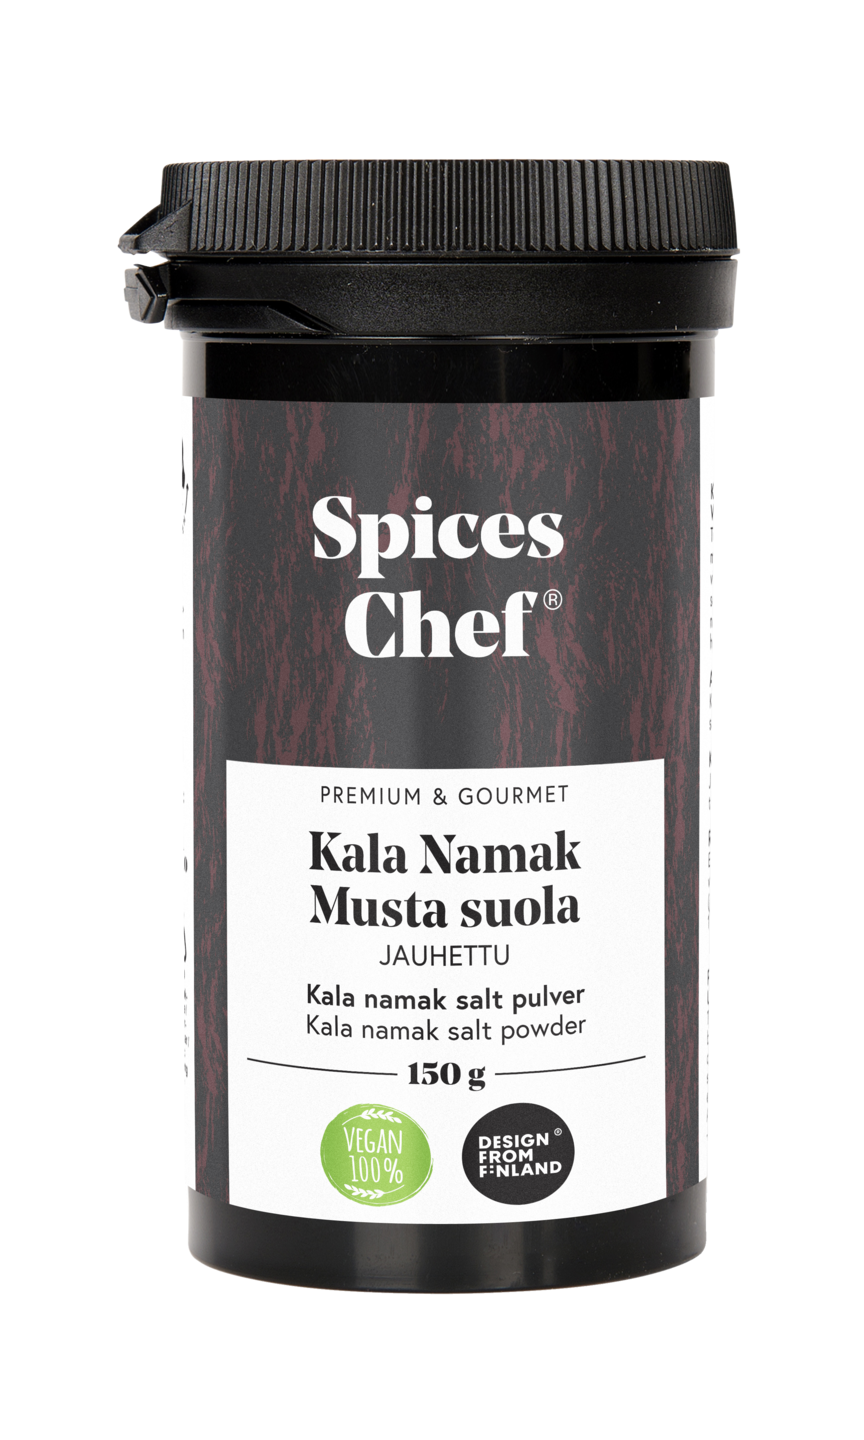 Spices Chef Kala Namak-suola jauhe 150g, BPA-vapaassa biomuovi maustepurkissa.